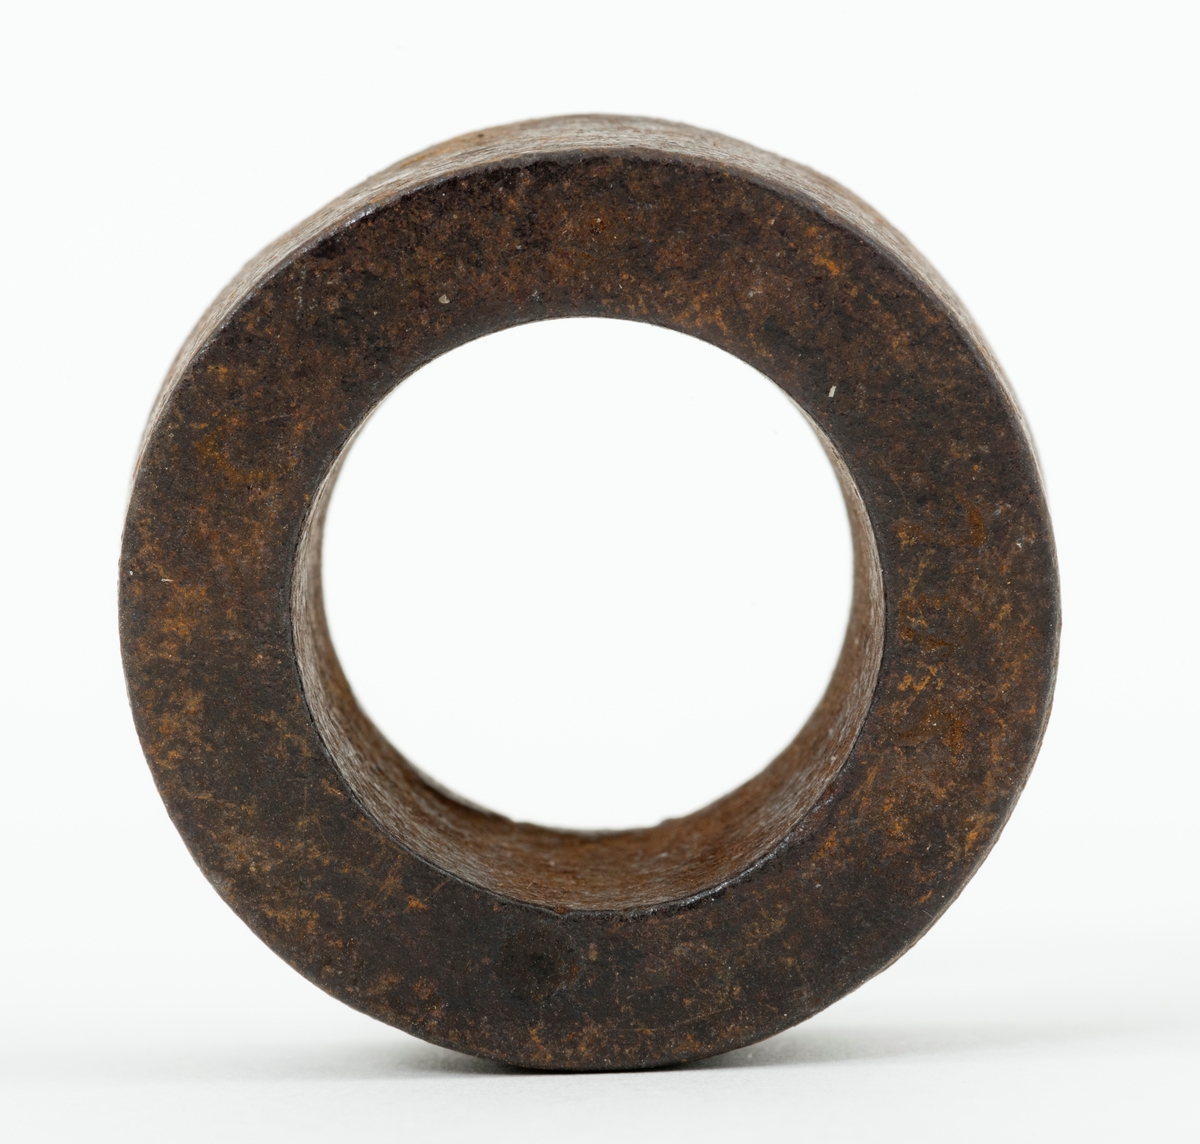 Skive – en jernring, brukt som mellomlegg ved et sammenføyingspunkt på et redskap eller en teknisk installasjon. Skiva eller ringen har en utvendig diameter på 3,5 centimeter. Den innvendige diameteren er 2,1 centimeter. Skiva er drøyt 1,4 centimeter tjukk. Den veier 59 gram.